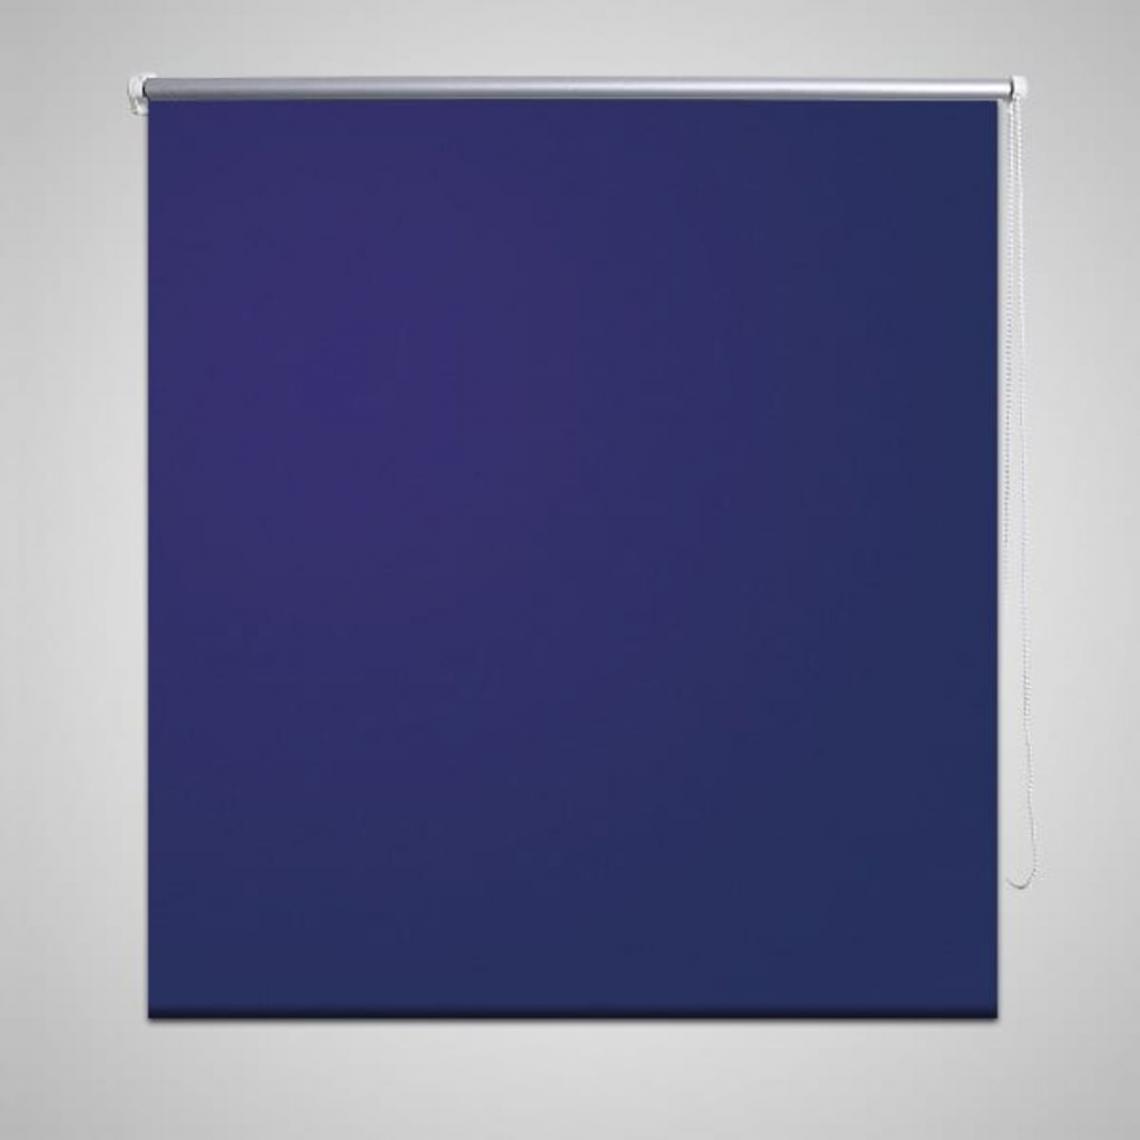 Hucoco - Store enrouleur occultant 140 x 175 cm bleu - Bleu - Store compatible Velux